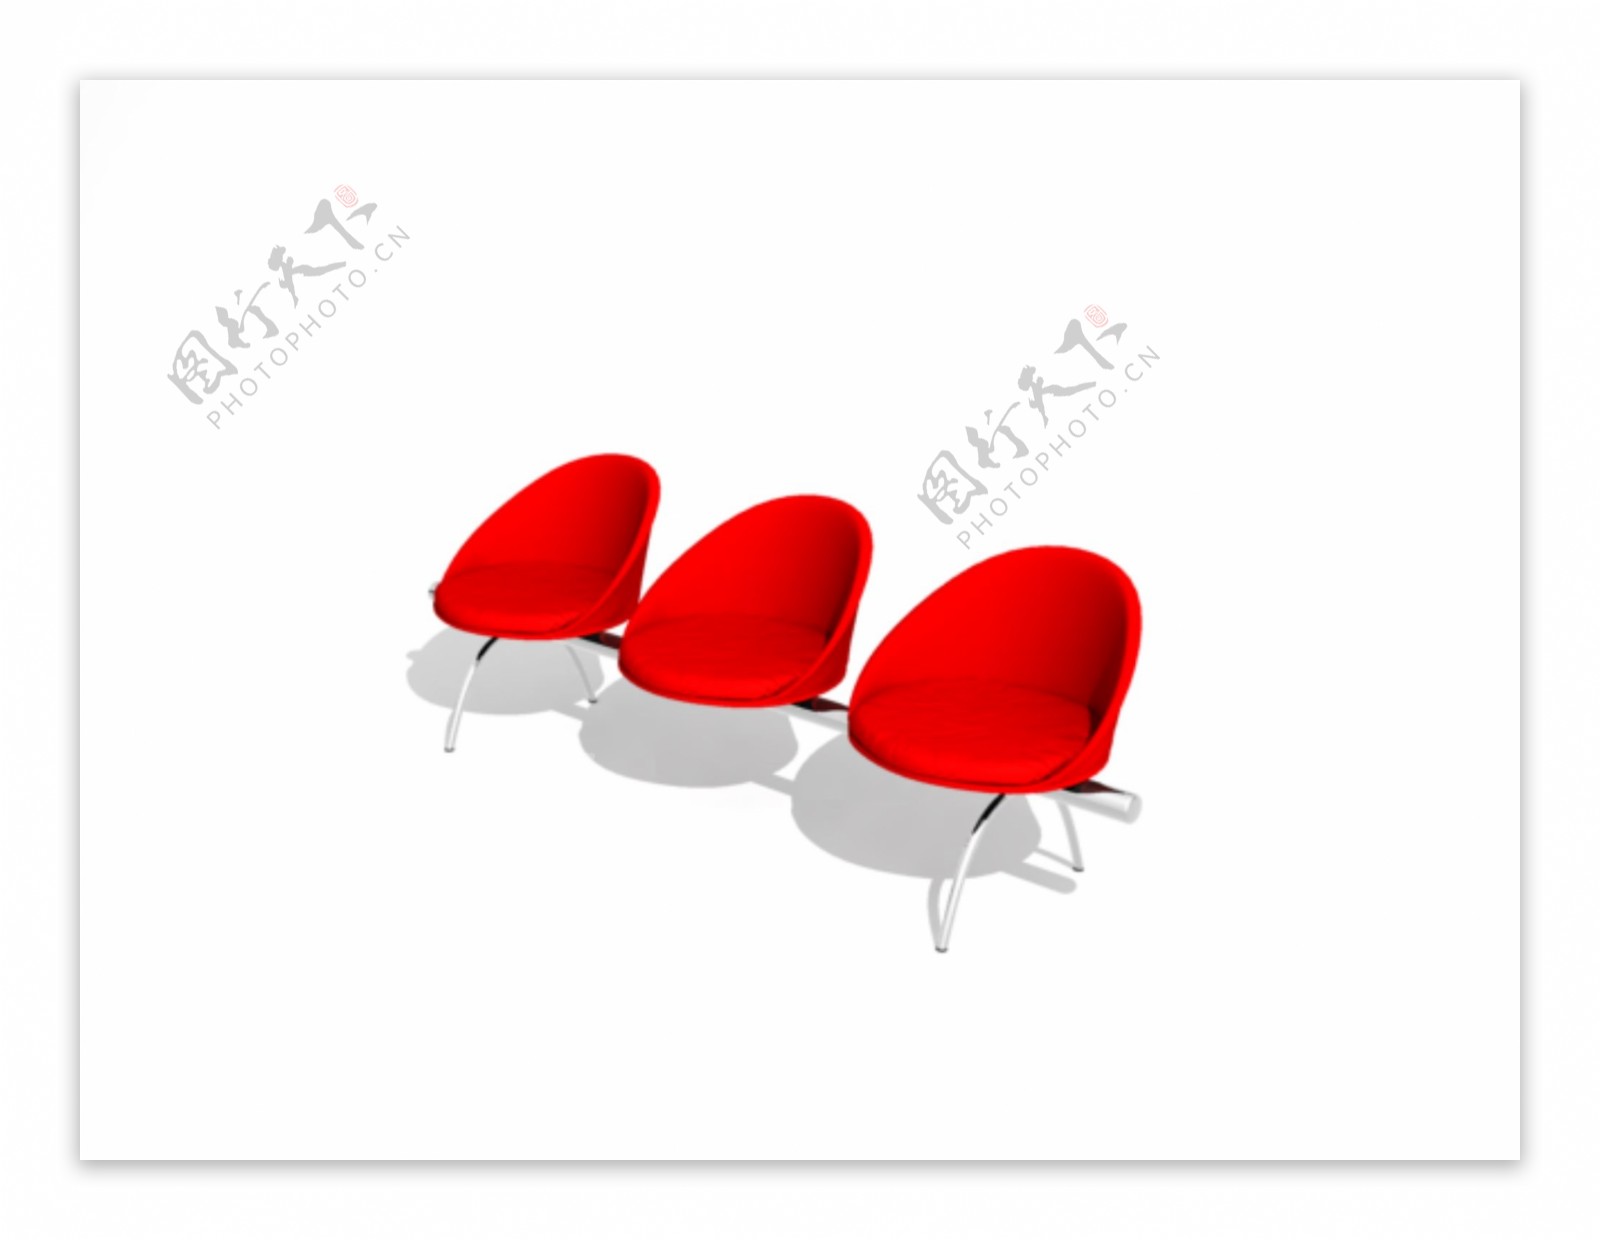 公装家具之公共座椅0553D模型